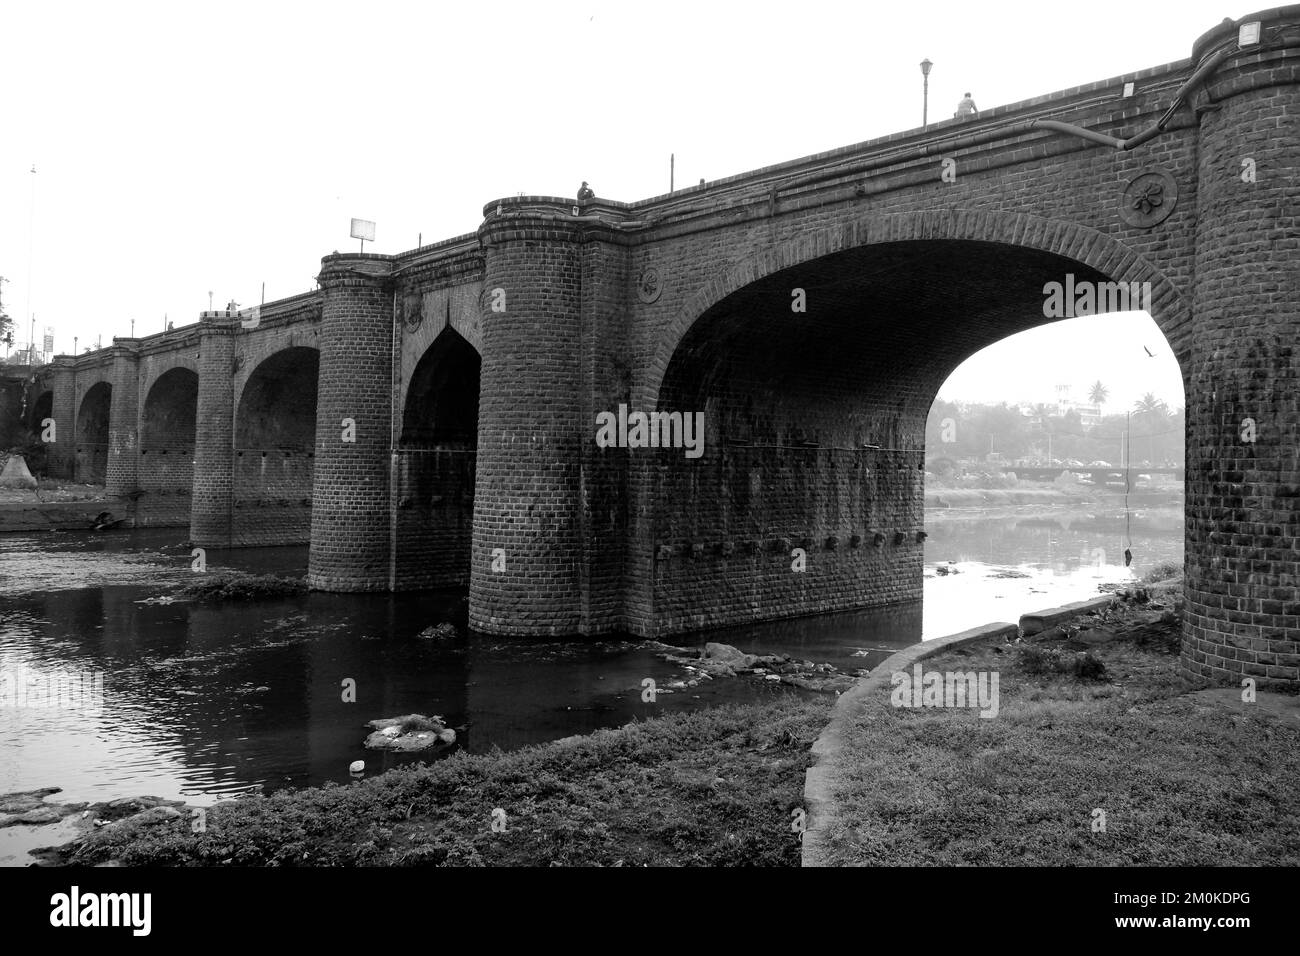 06 décembre 2022, Pune, Inde, pont Chhatrapati Shivaji, ce pont du patrimoine reliant les deux rives de la rivière, lien entre la vieille ville Banque D'Images